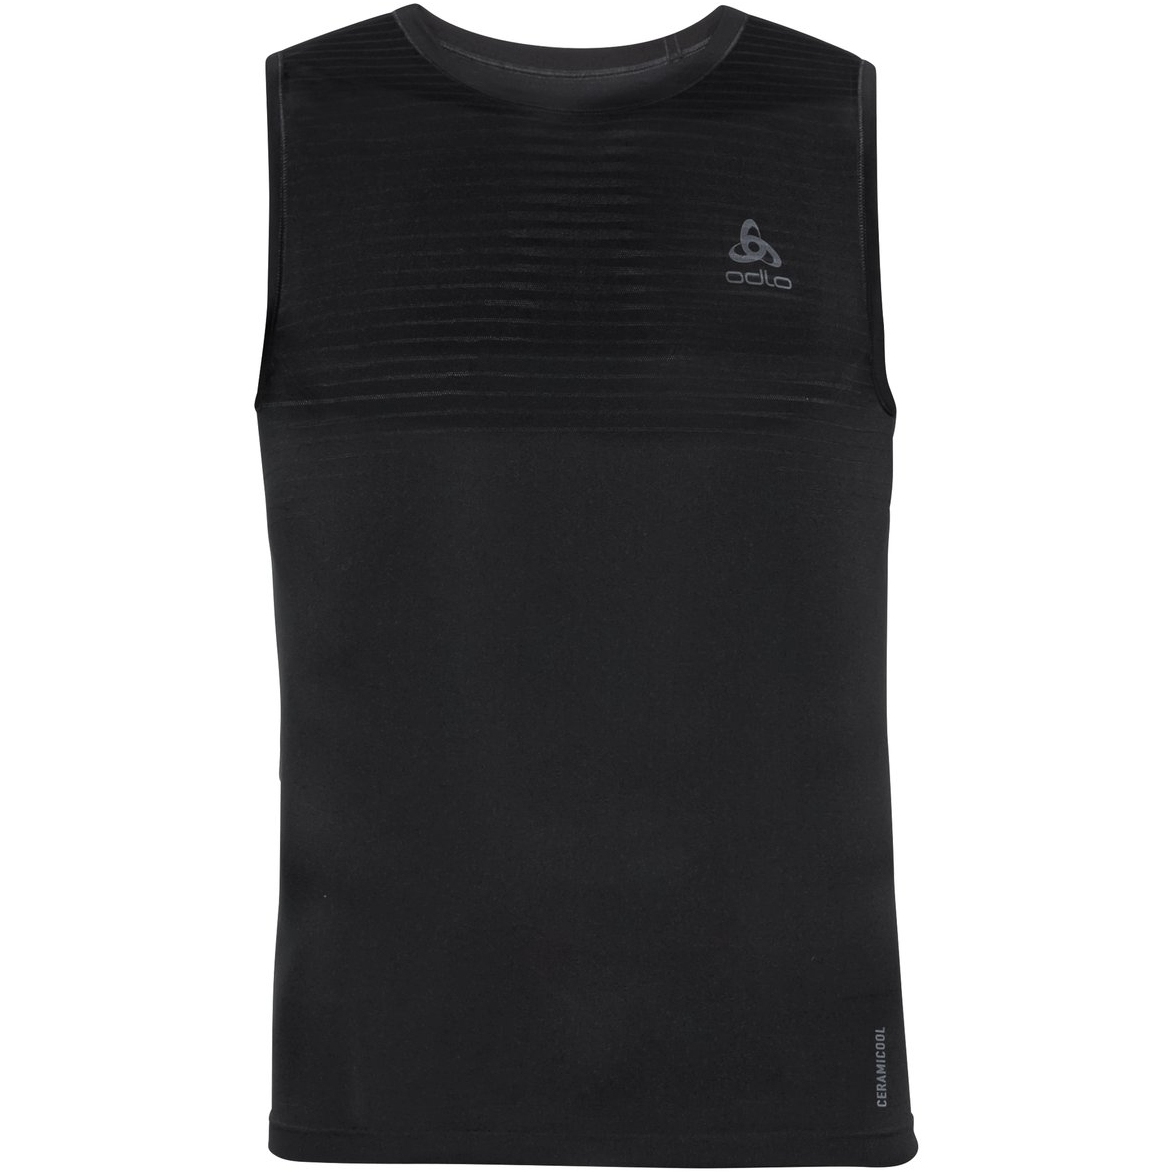 Produktbild von Odlo Performance X-Light Ärmelloses Unterhemd Herren - schwarz